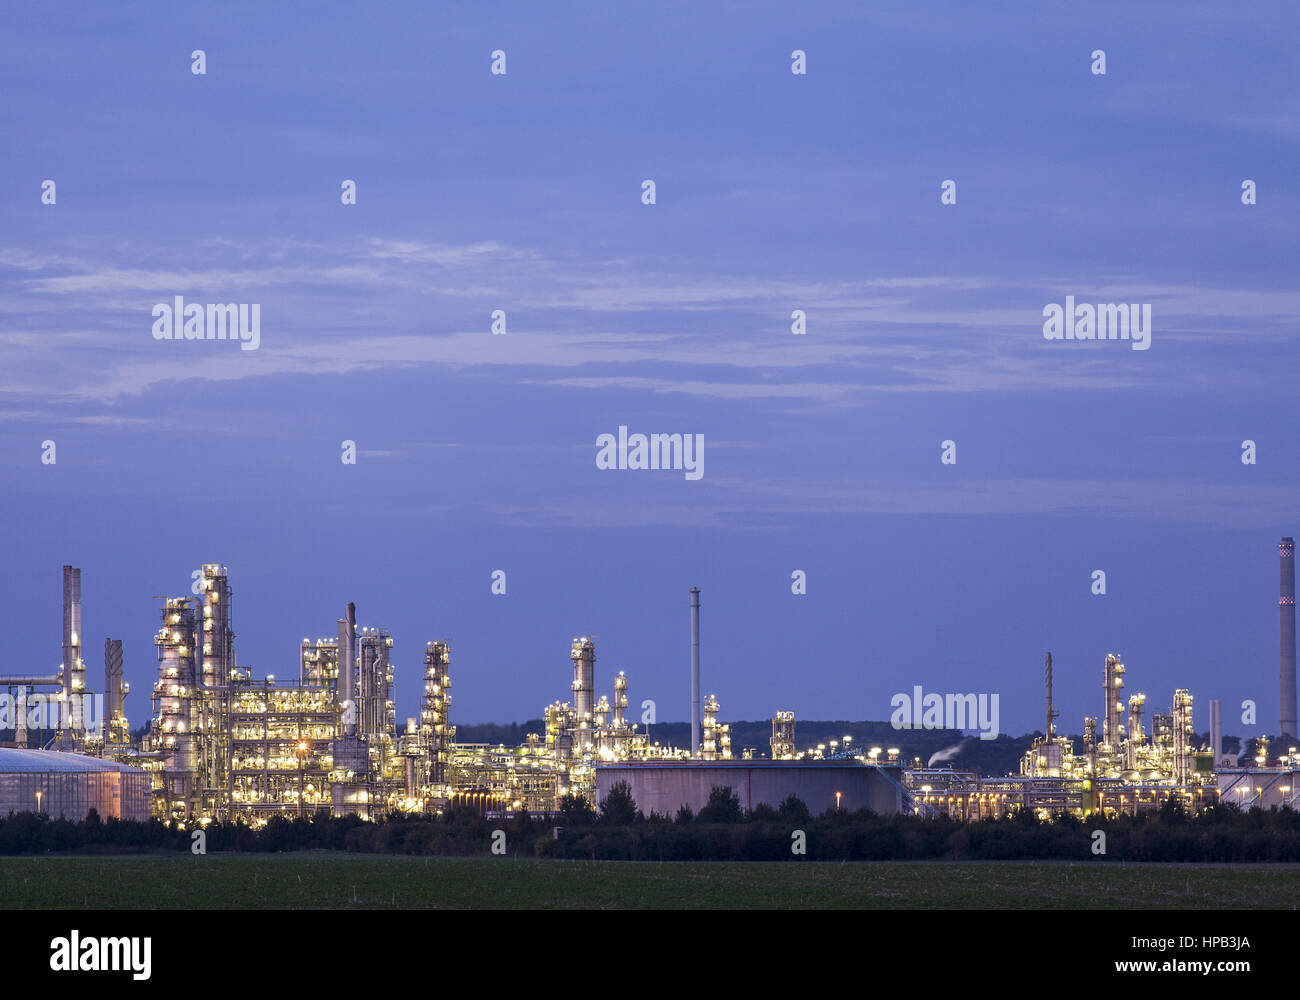 Raffinerie, Nachtaufnahme, Deutschland Stock Photo